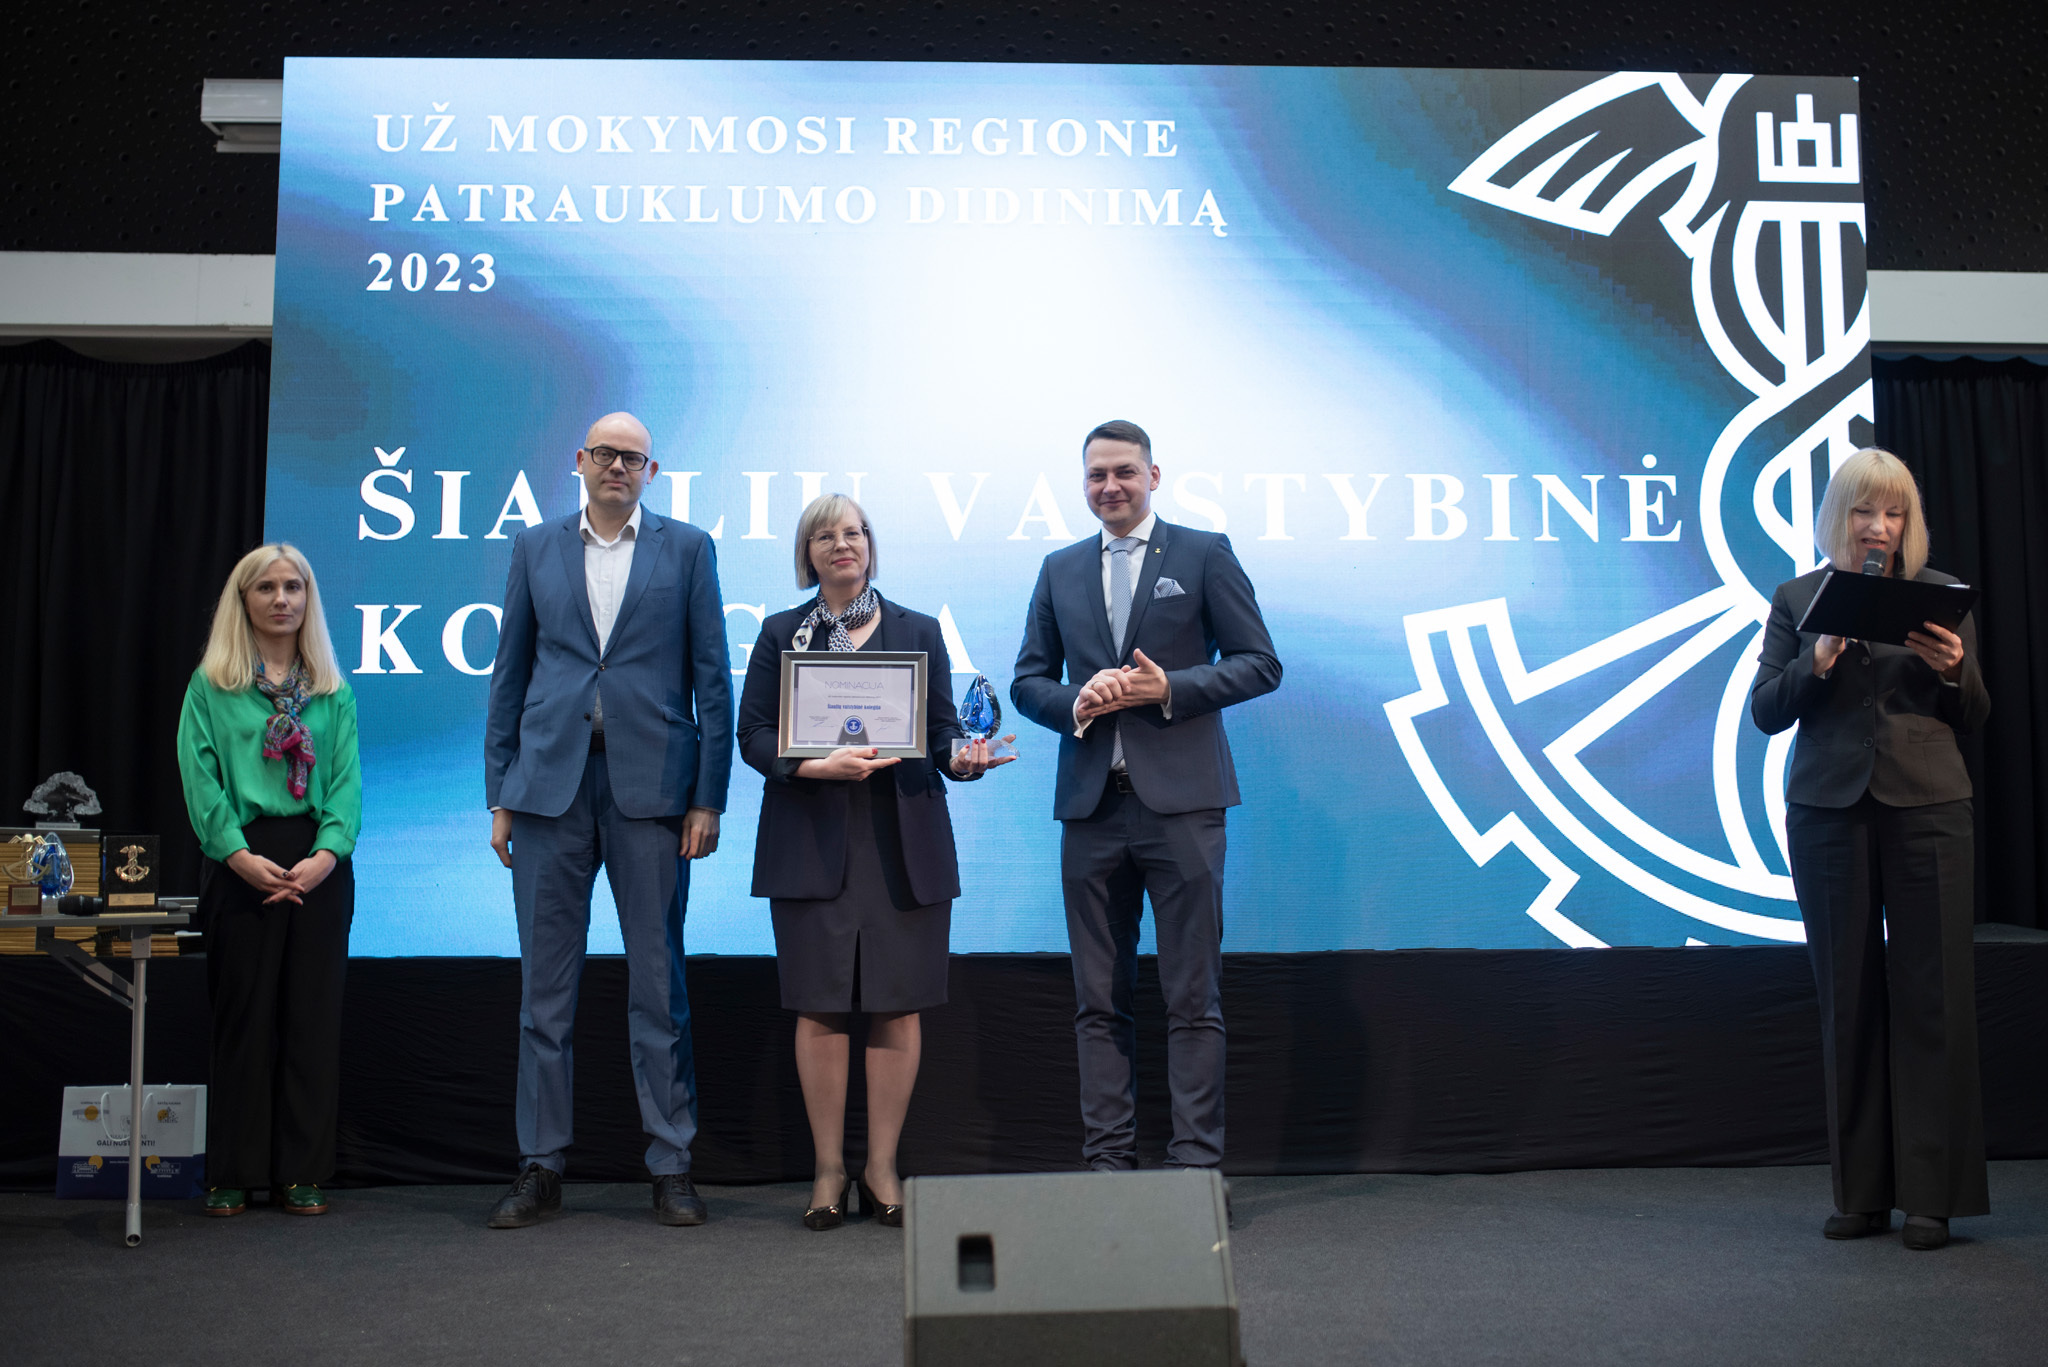 Šiaulių valstybinei kolegijai – apdovanojimas „Už mokymosi regione patrauklumo didinimą“